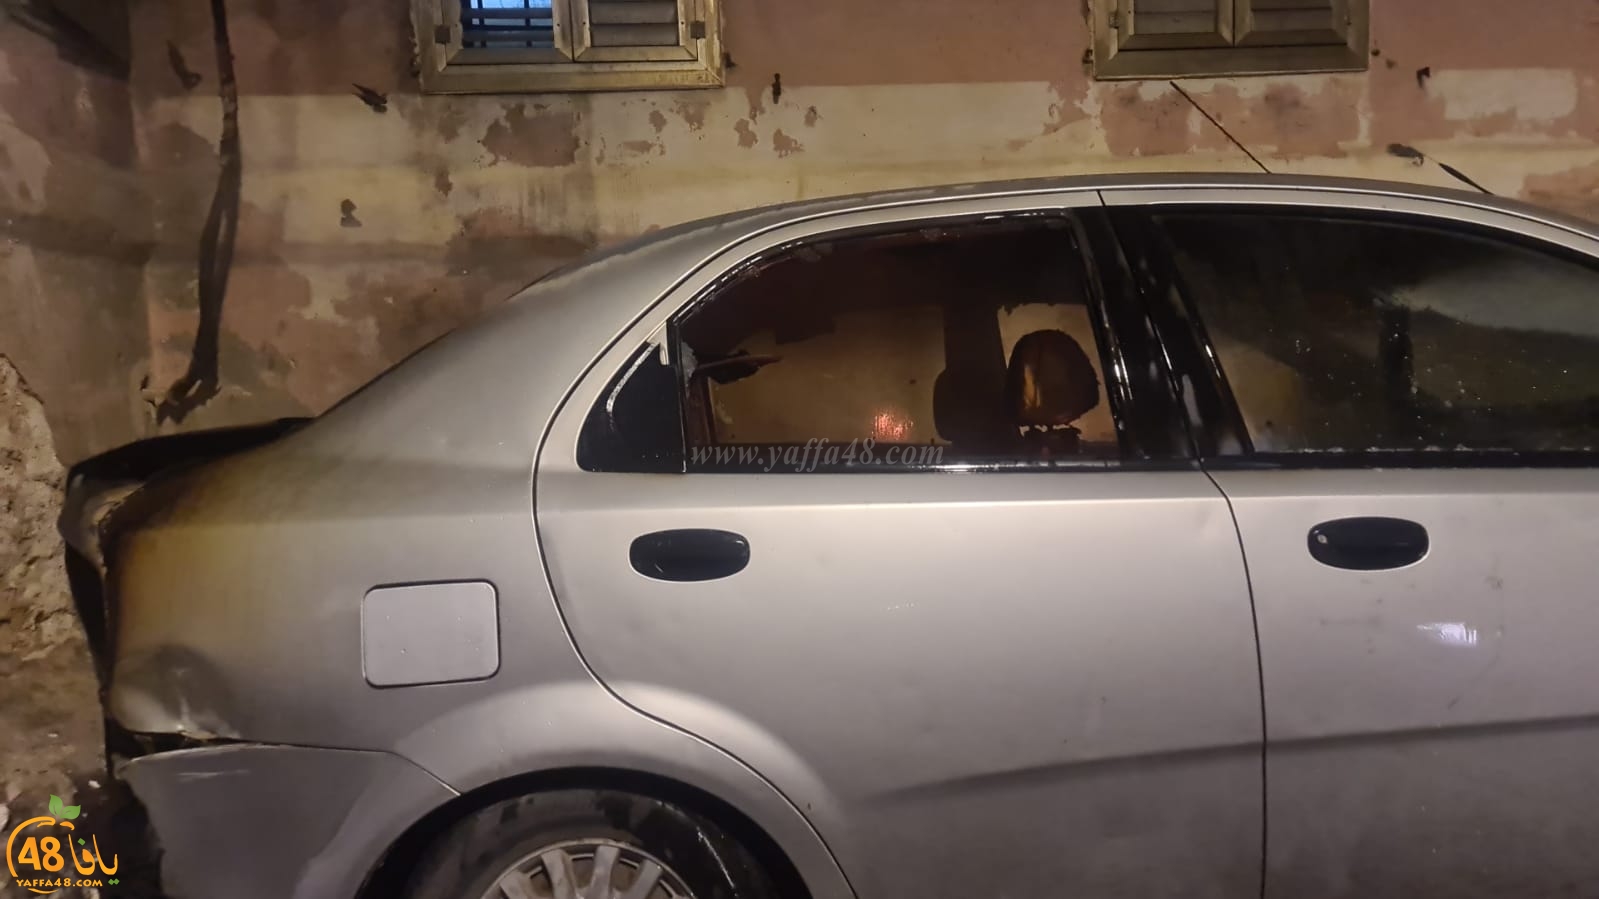  يافا: احتراق مركبة دون الابلاغ عن وقوع اصابات